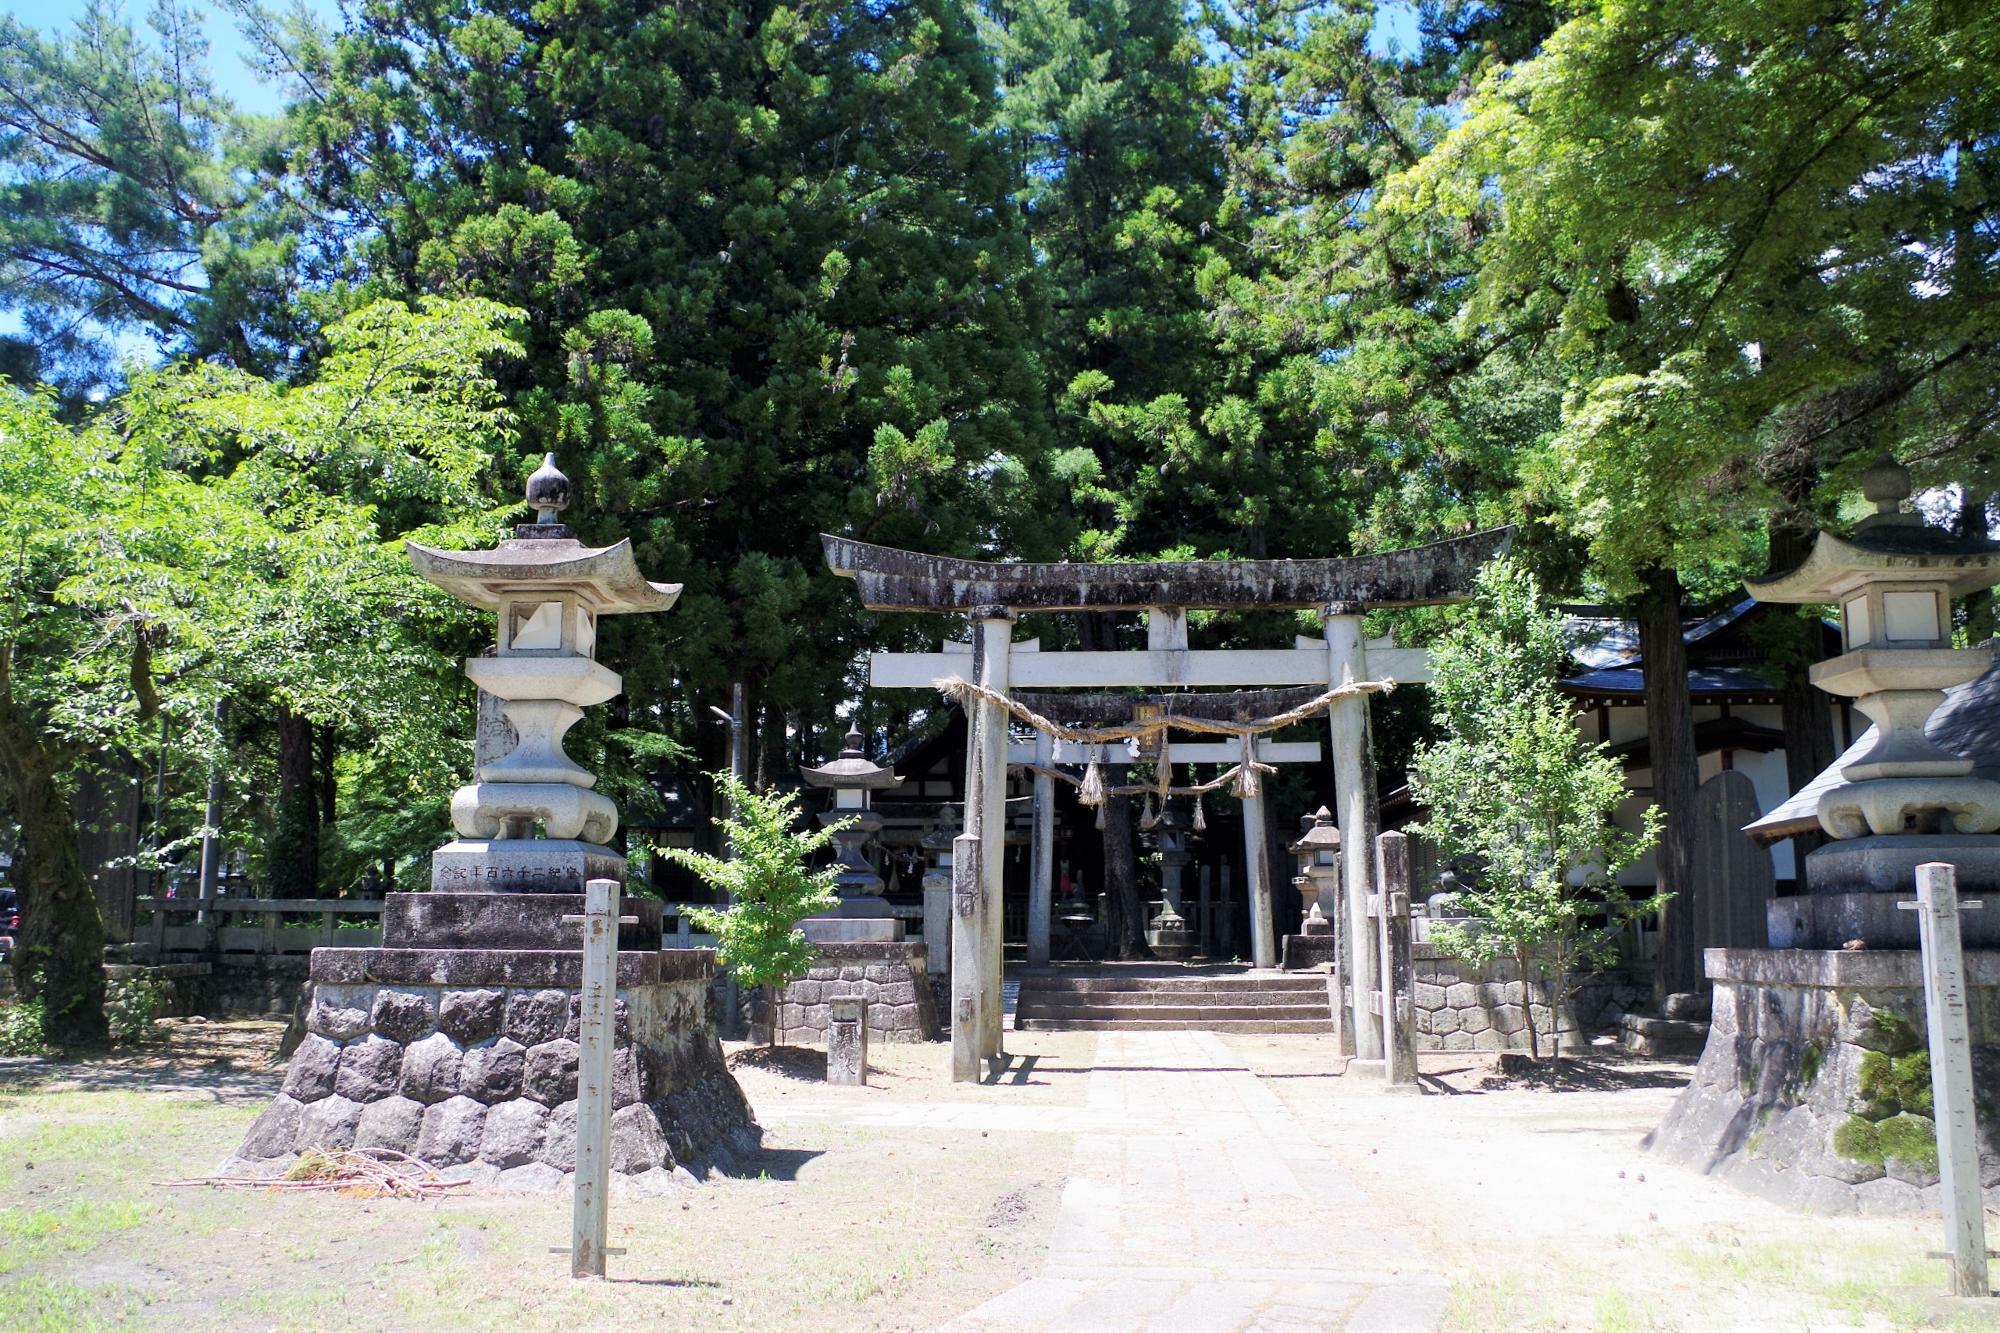 ハローワーク飯田や扇町公園にほど近い愛宕神社